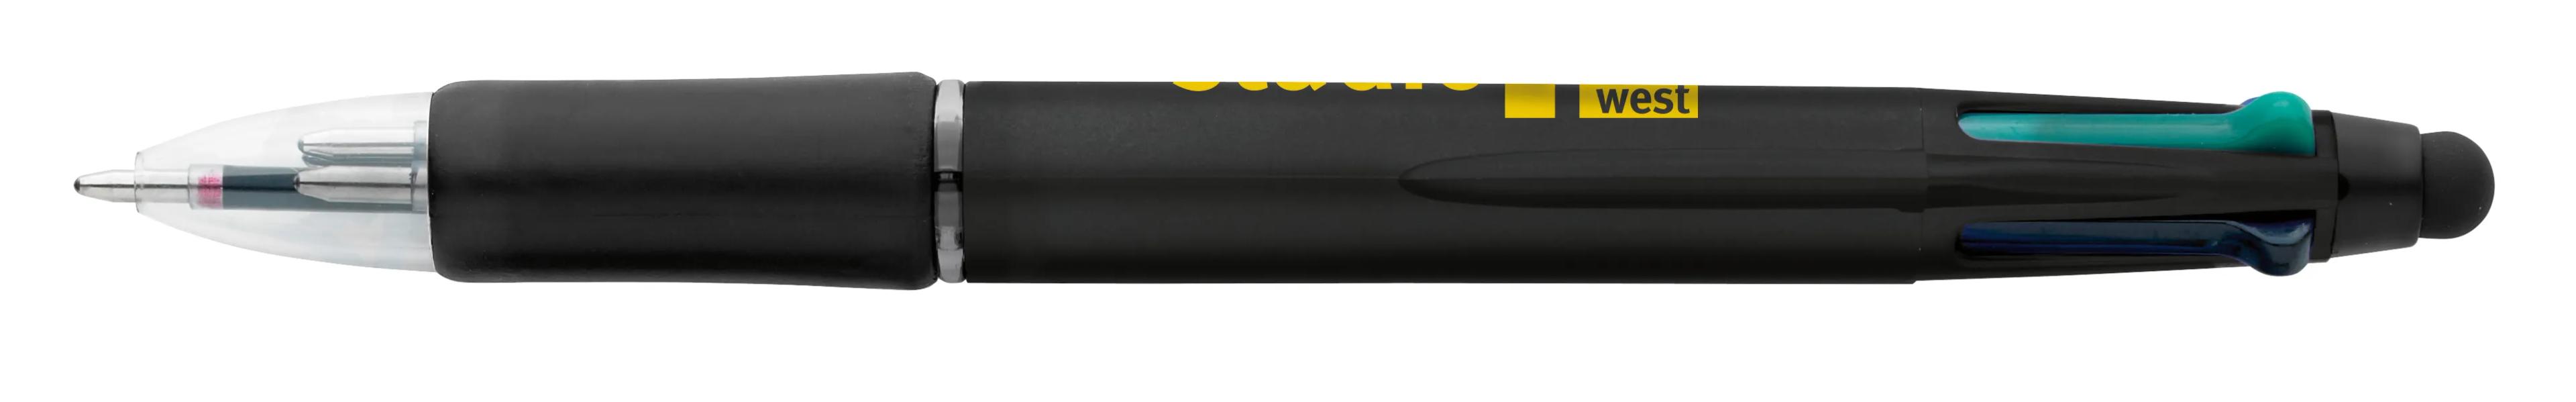 Orbitor Metallic Stylus Pen 29 of 56